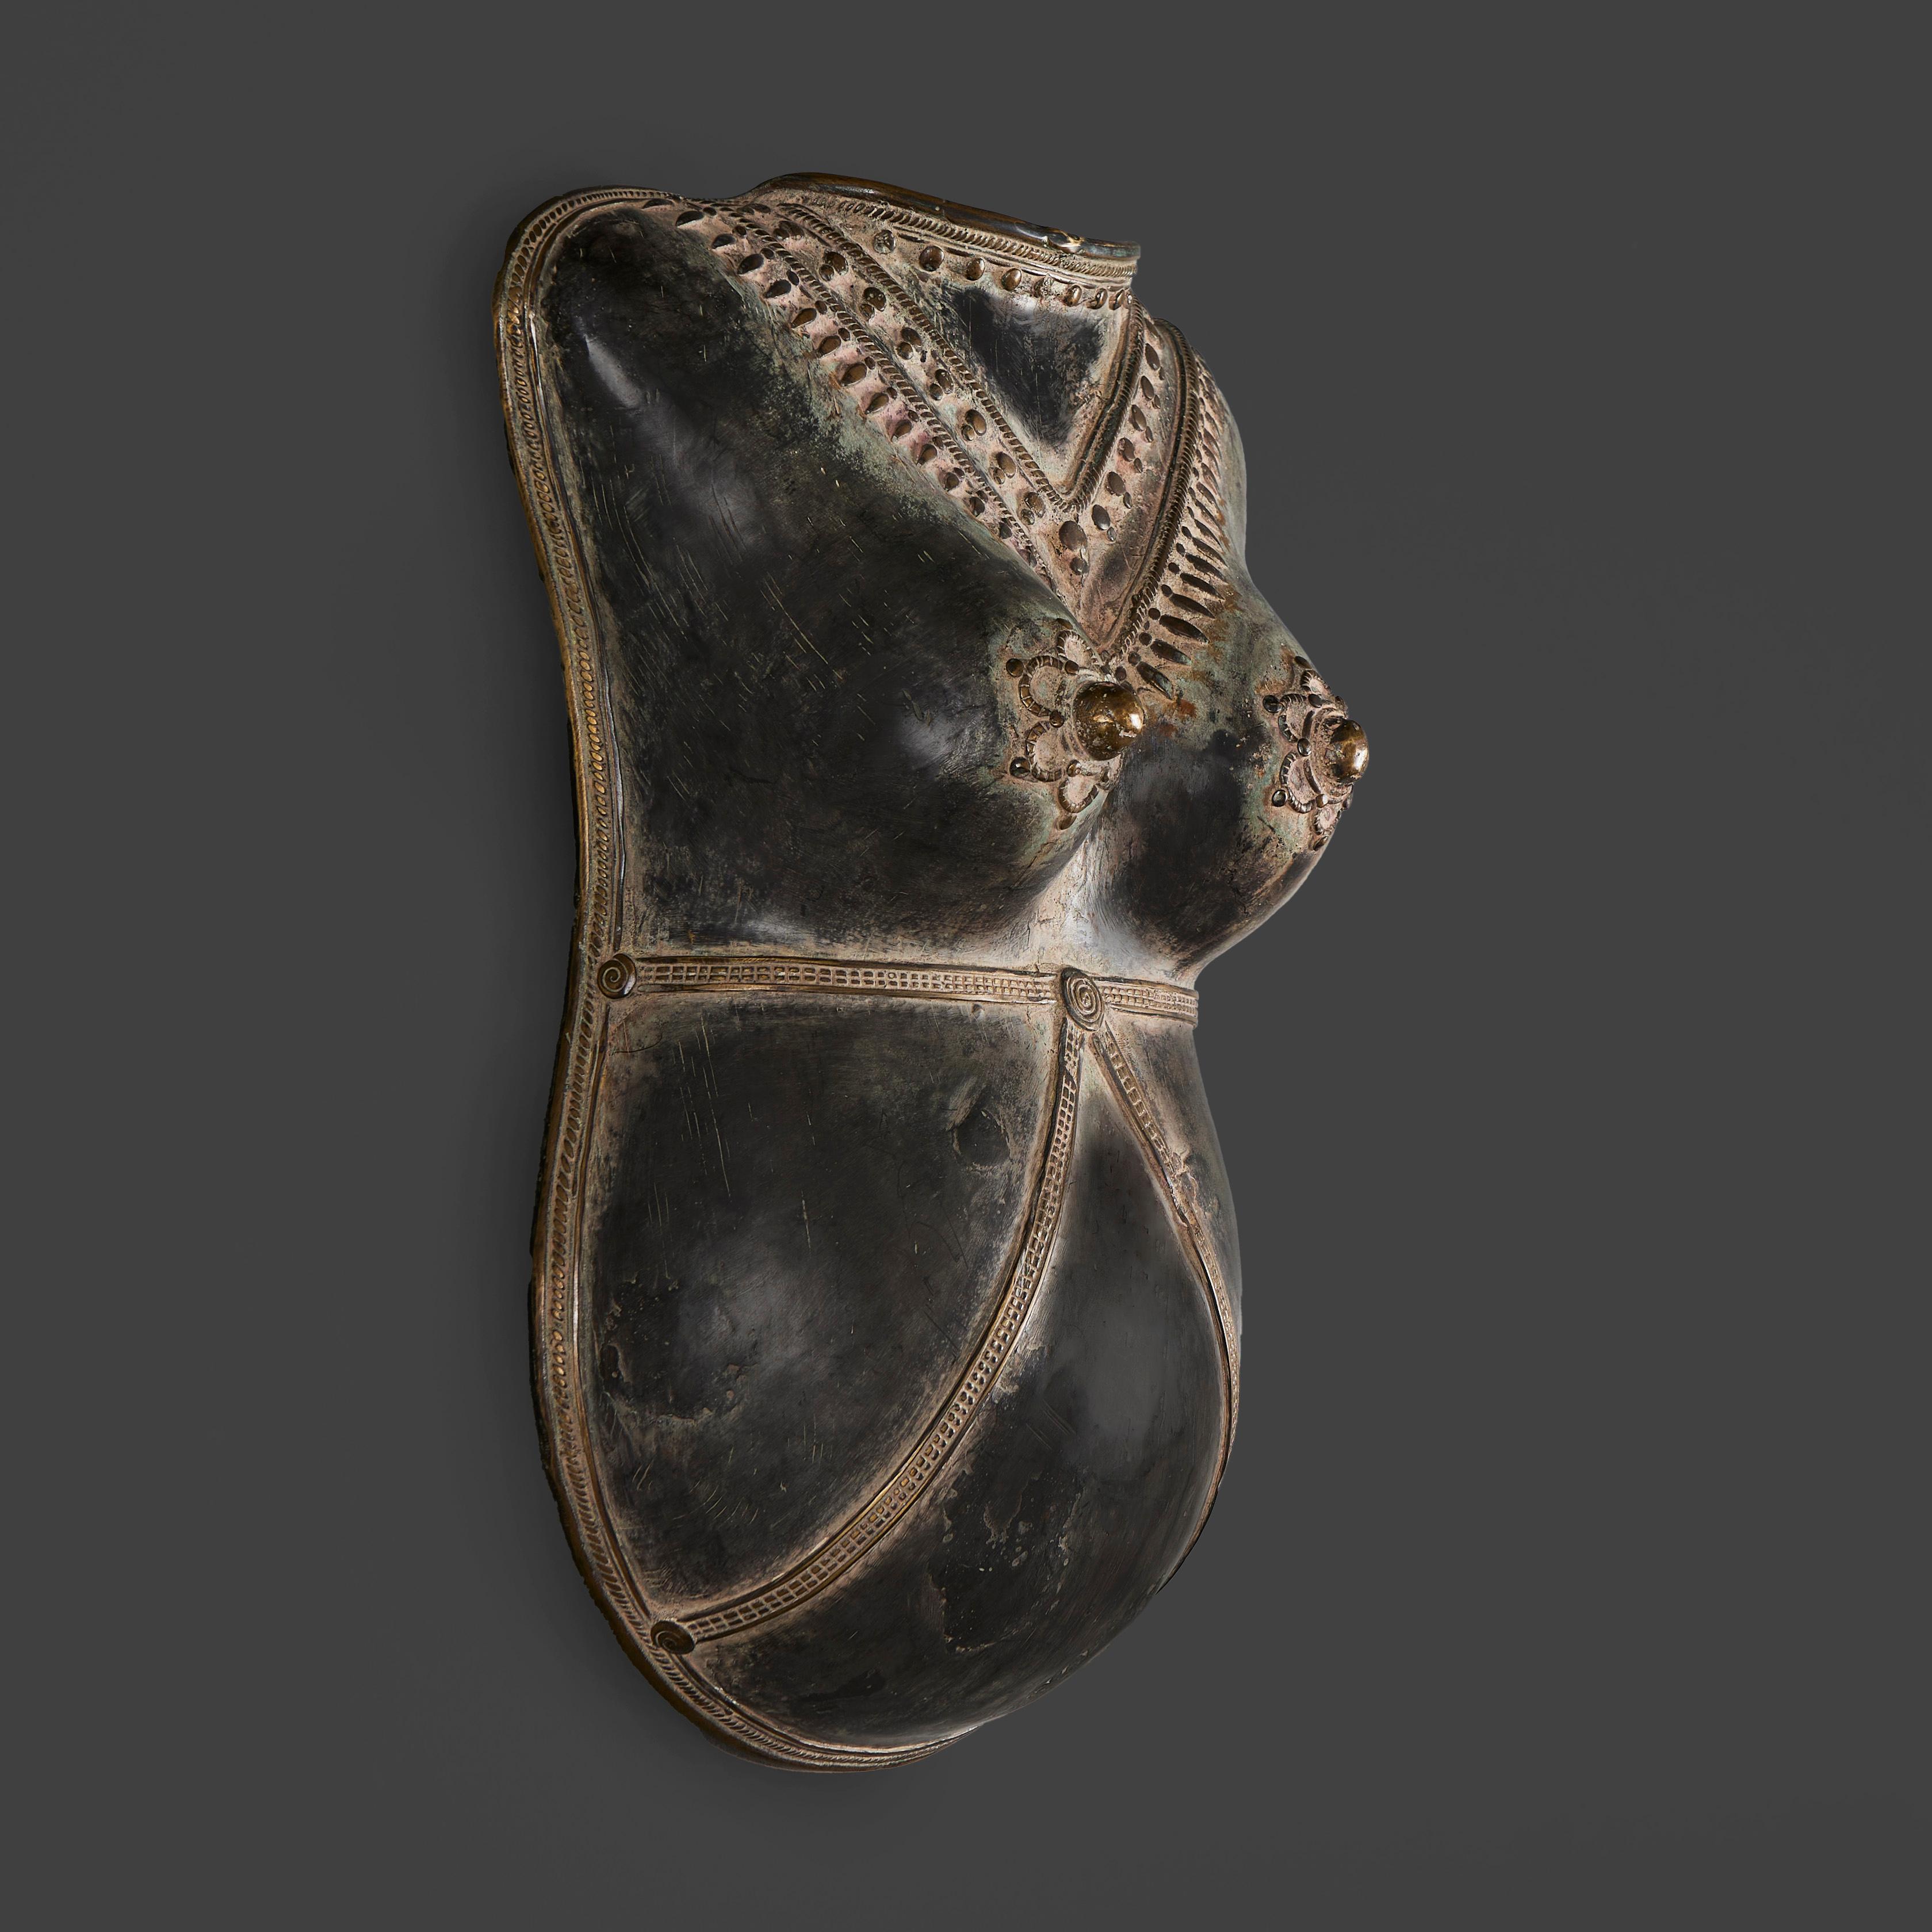 Inde du Sud, vers 1860

Plastron en bronze de l'Inde du Sud du milieu du XIXe siècle symbolisant la fertilité, décoré d'un collier sur la poitrine.

Hauteur  40.00cm
Largeur  28.00cm
Profondeur  17.00cm